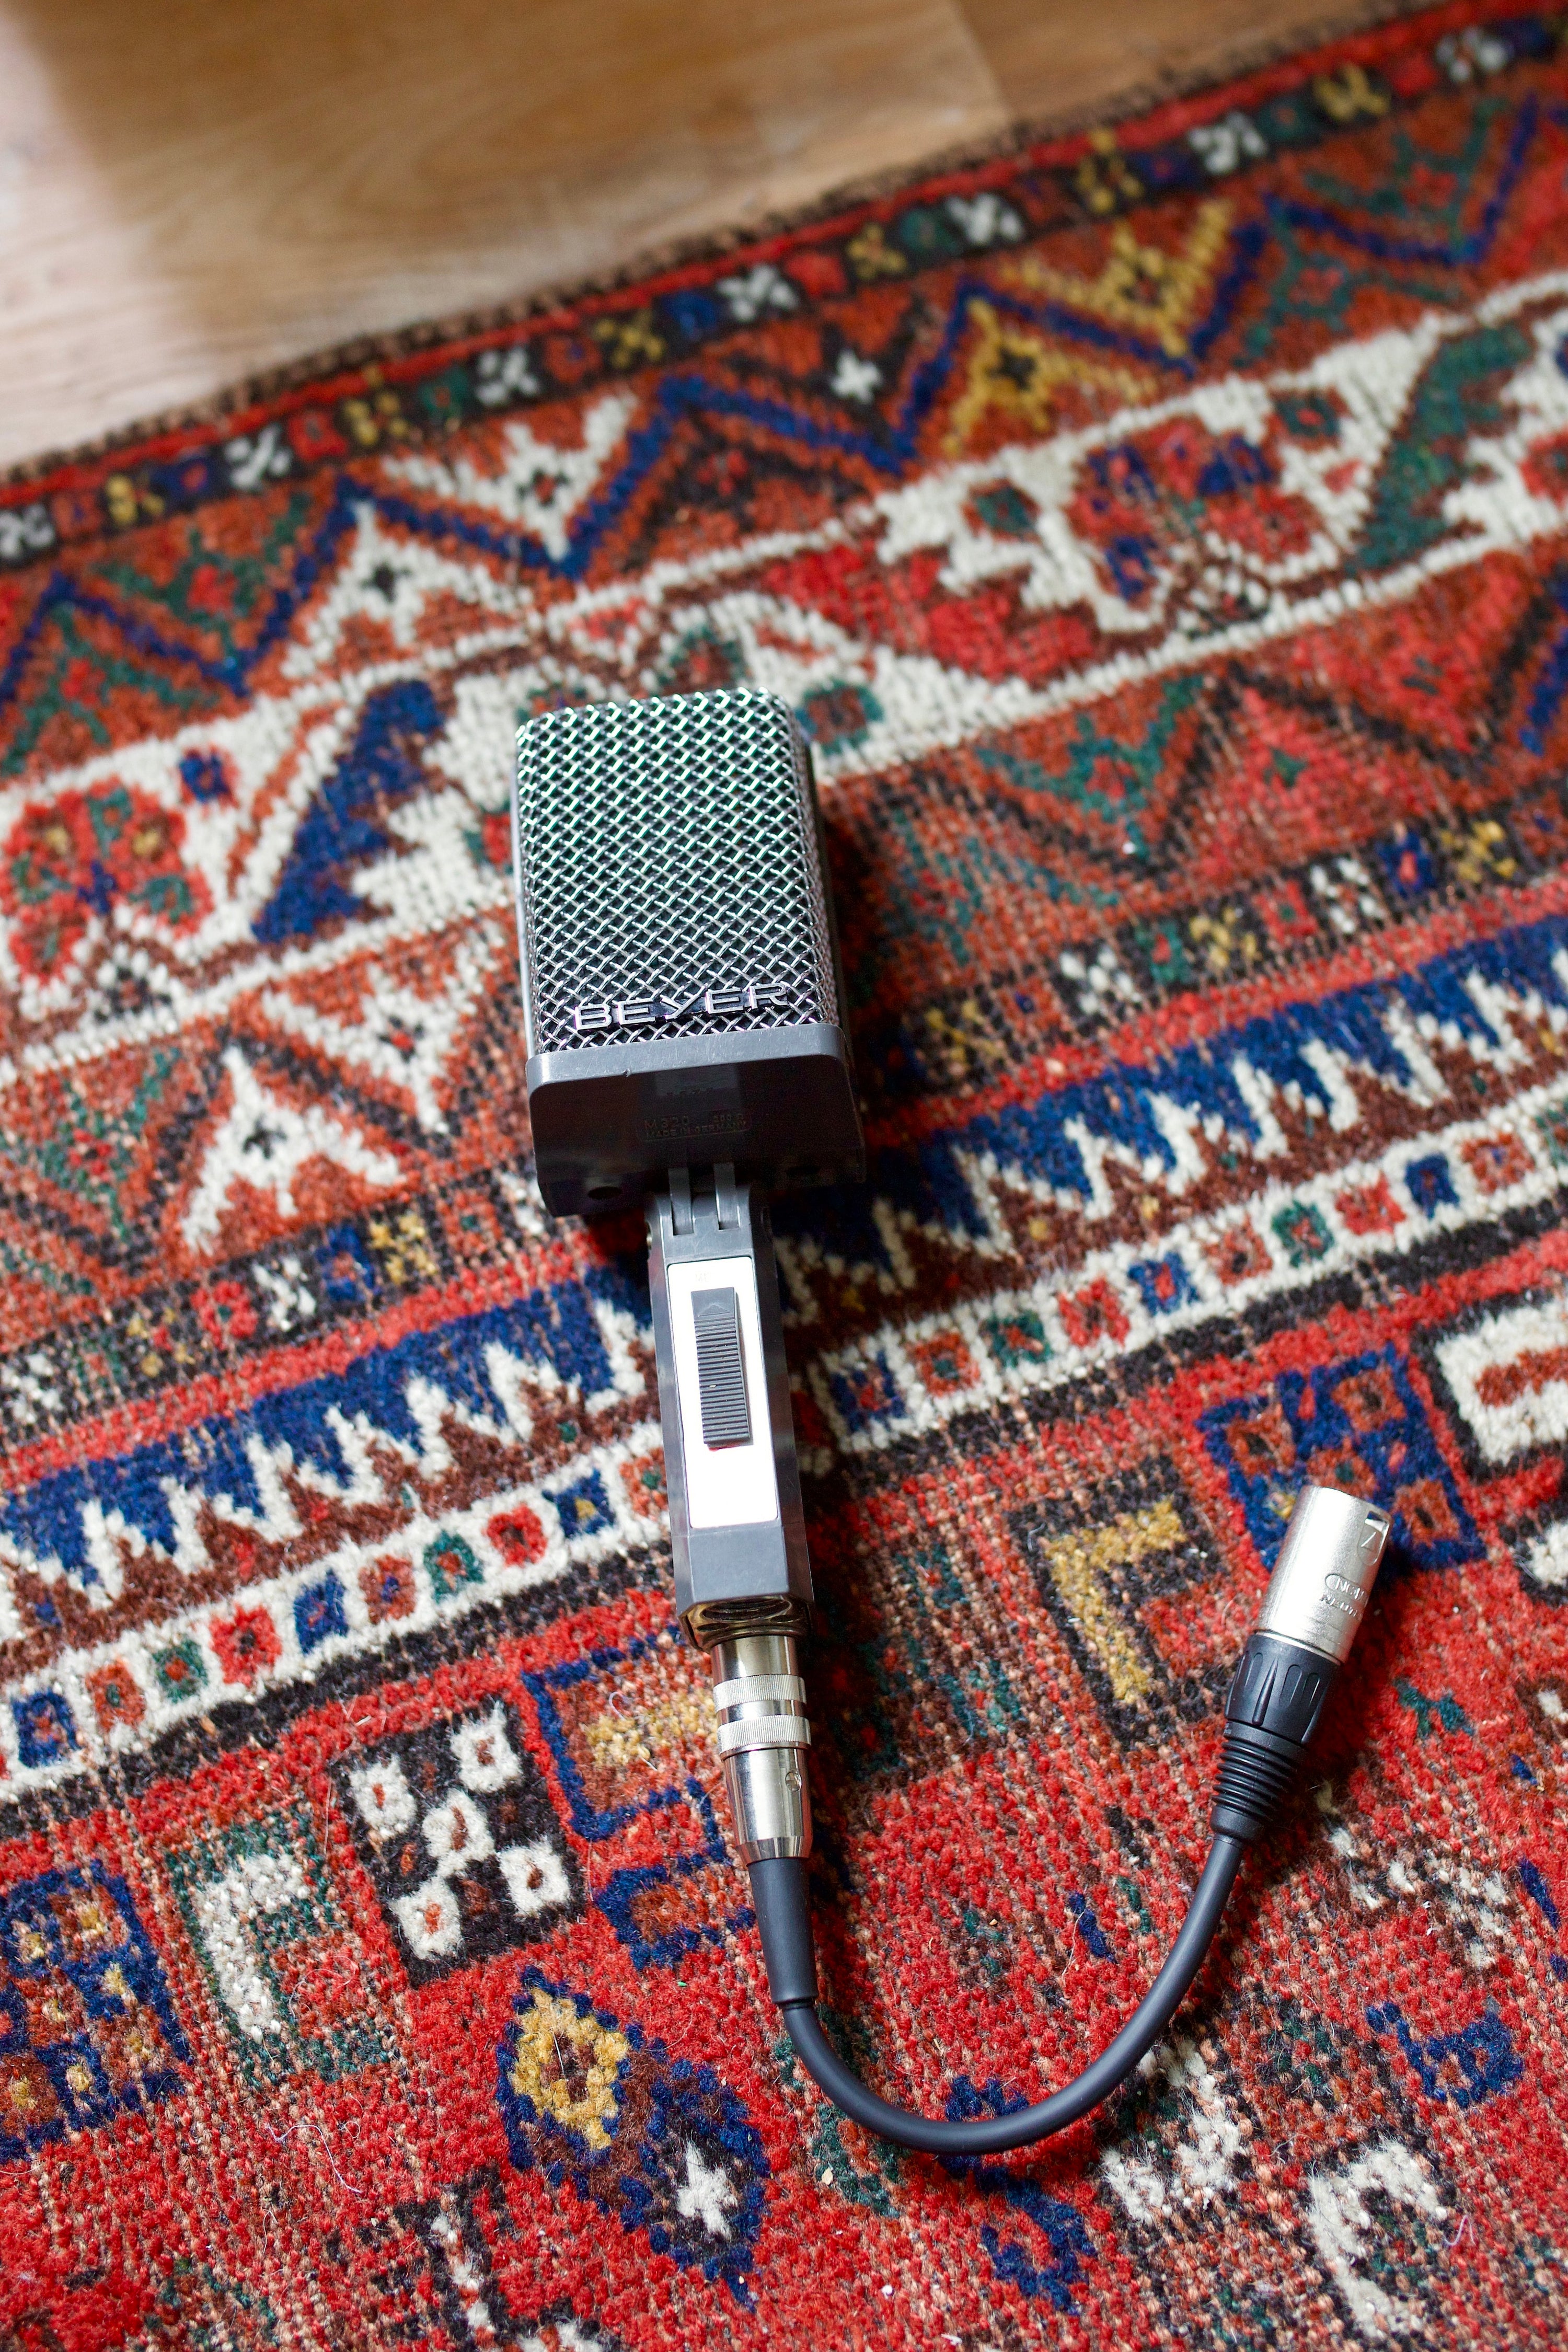 Beyerdynamic M320 Ribbon Microphone